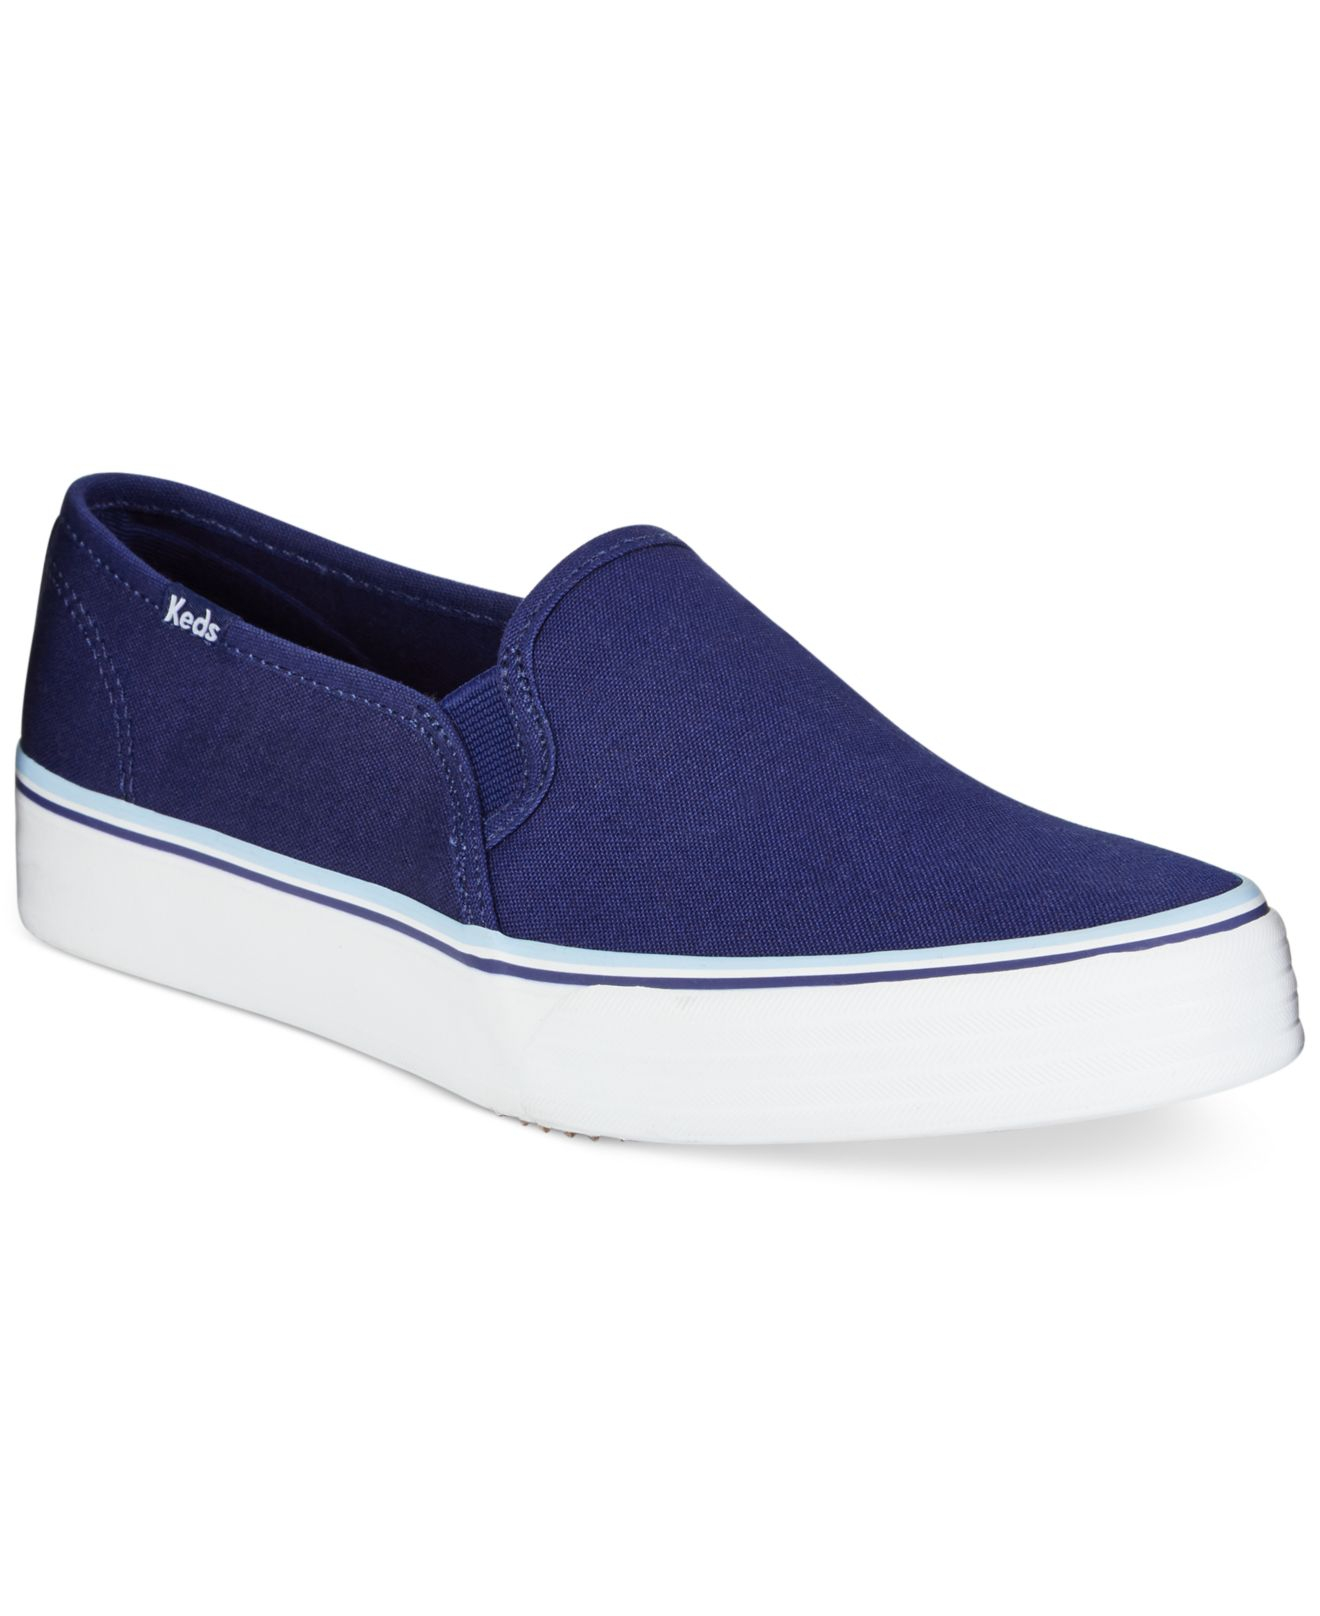 Lyst - Keds Women's Double Decker Slip-on Sneakers in Blue